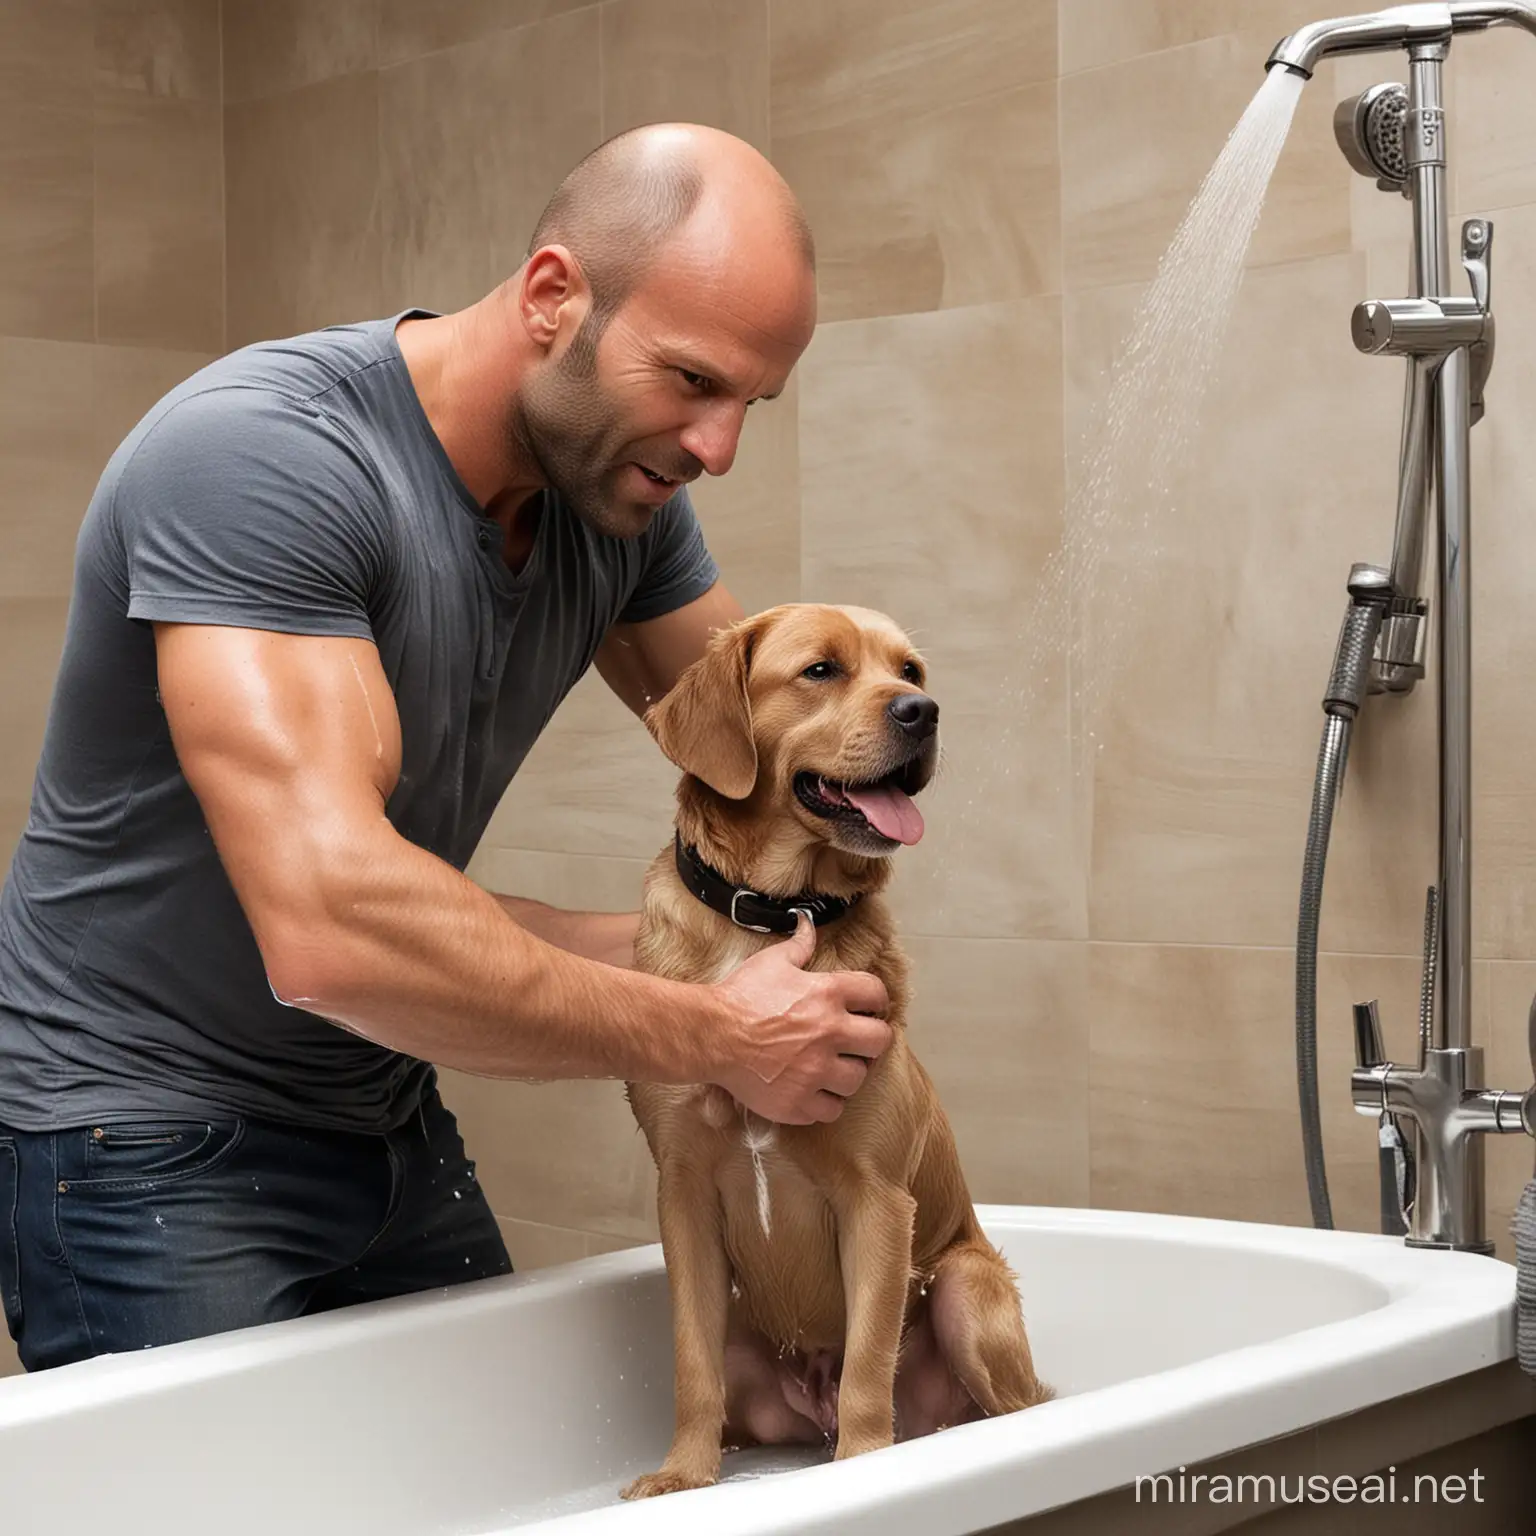 Jason Statham Washing His Dog